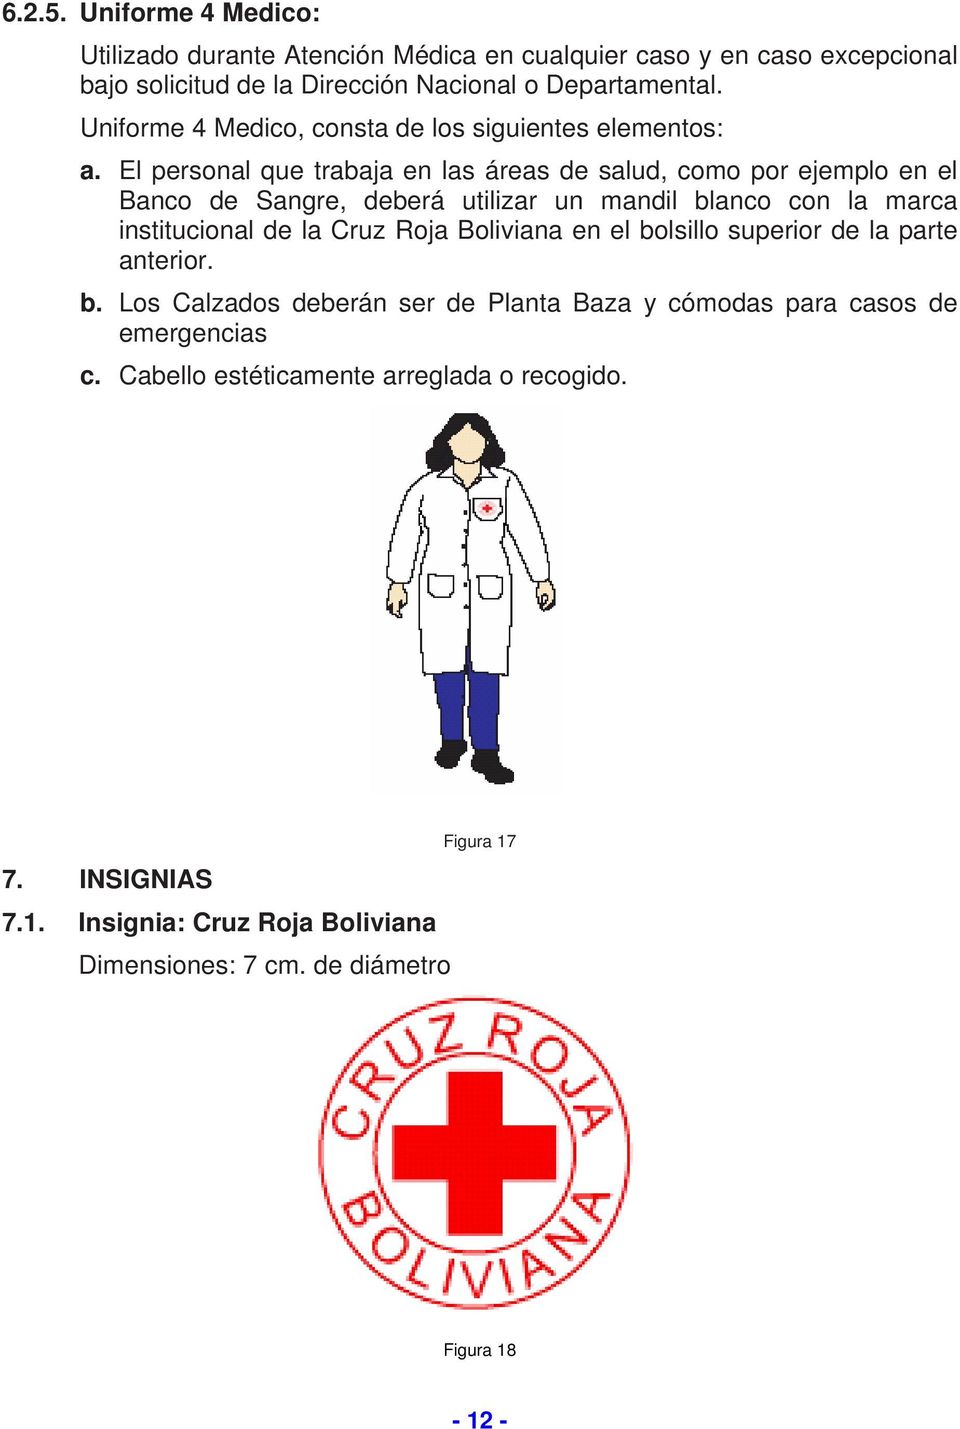 El personal que trabaja en las áreas de salud, como por ejemplo en el Banco de Sangre, deberá utilizar un mandil blanco con la marca institucional de la Cruz Roja